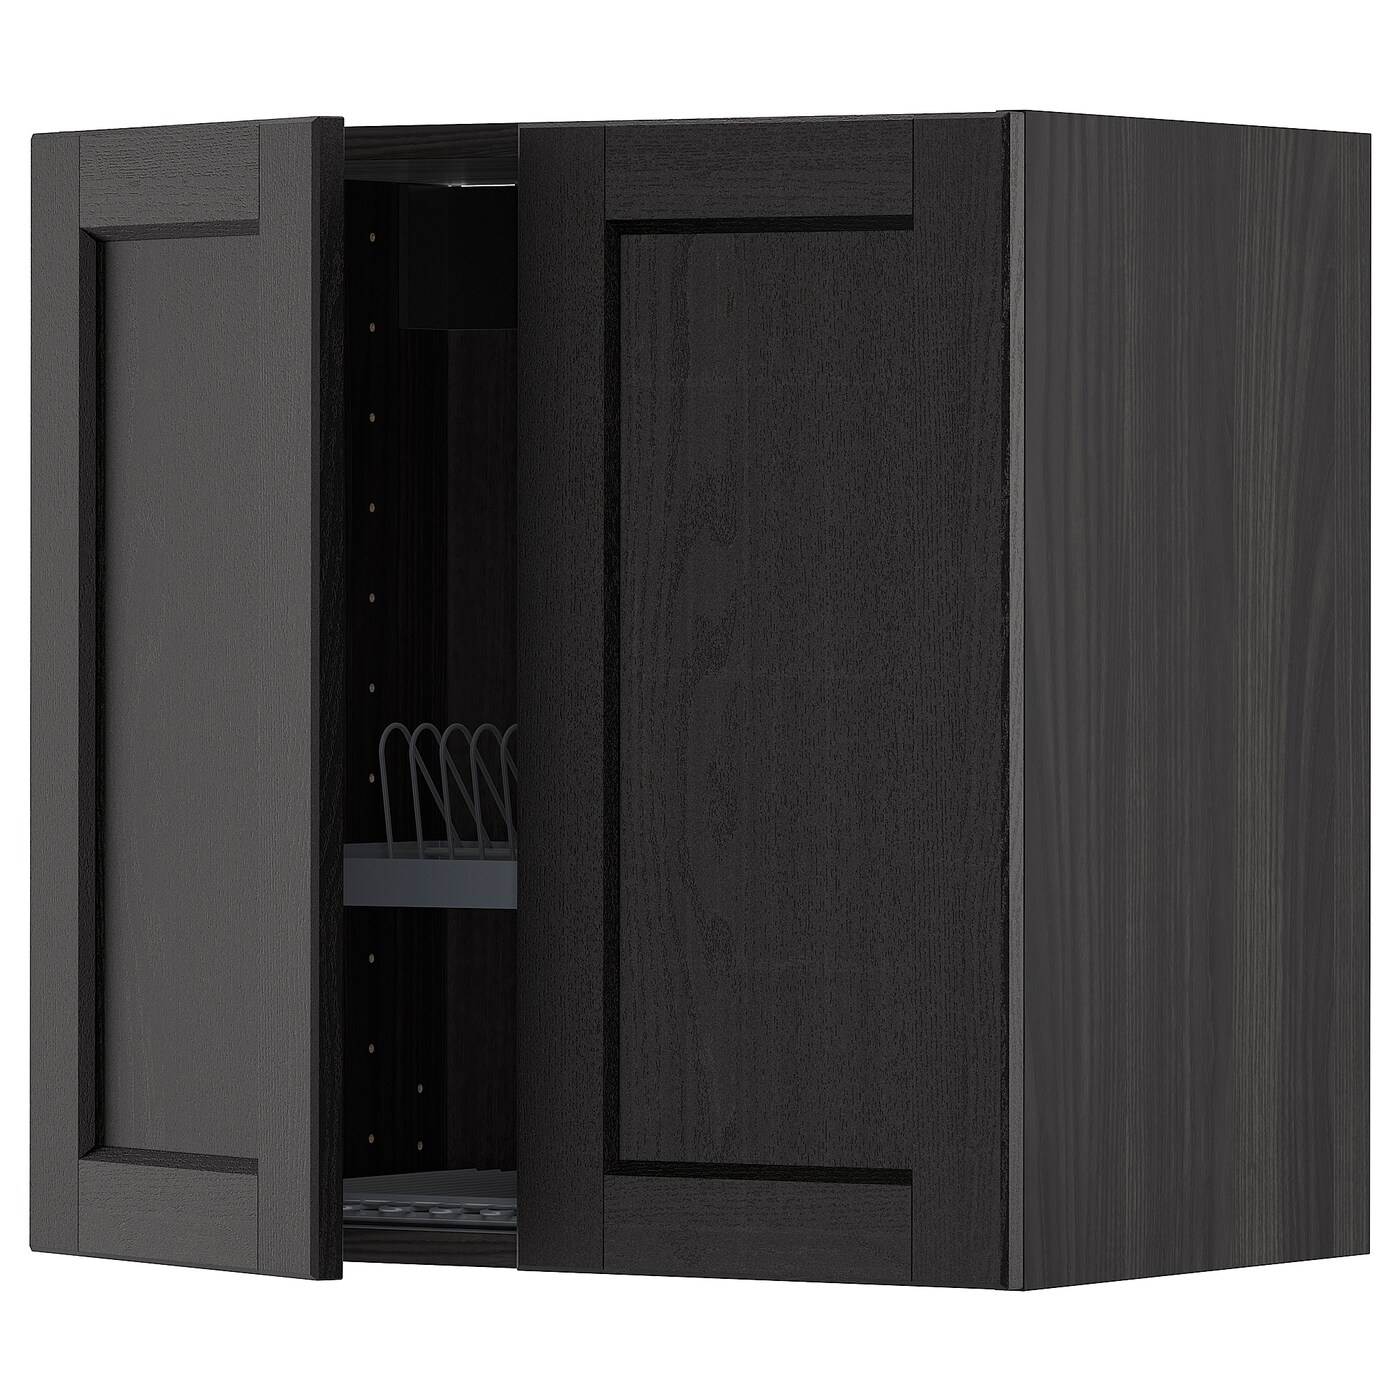 Навесной шкаф с сушилкой - METOD IKEA/ МЕТОД ИКЕА, 60х60 см, черный